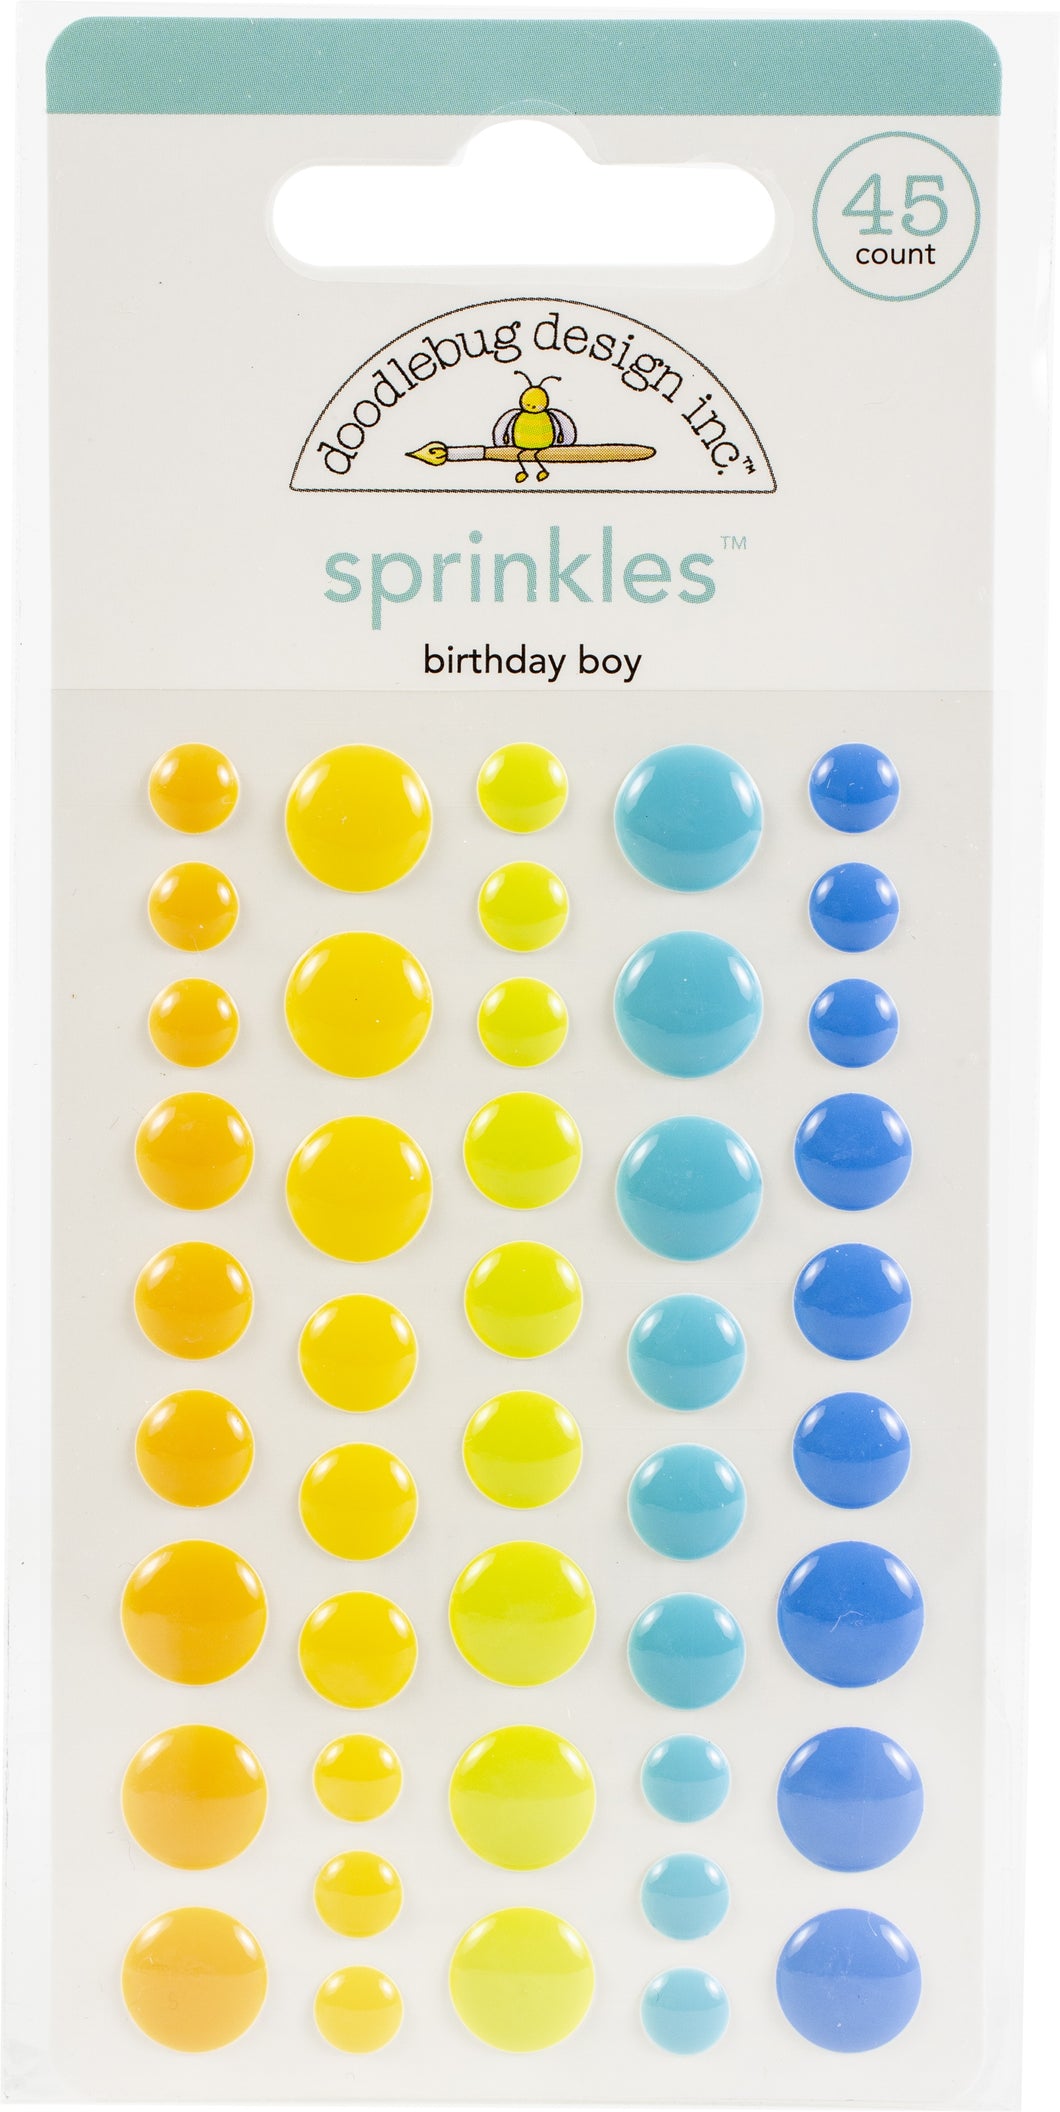 Doodlebug Design: Sprinkles - Birthday Boy Assortment